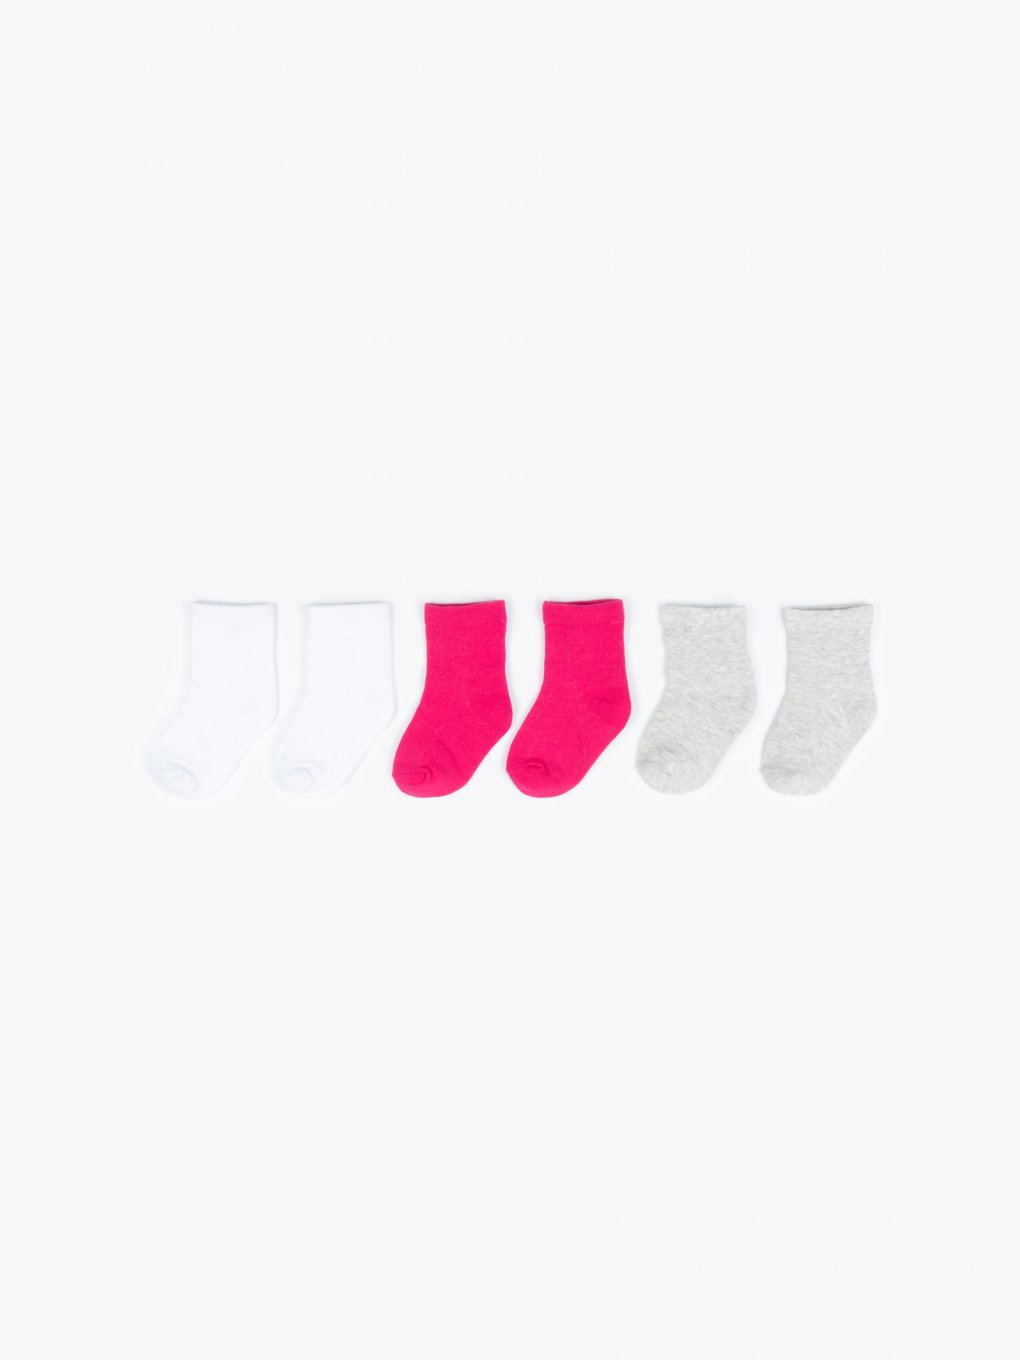 Basic socks - 3 pack